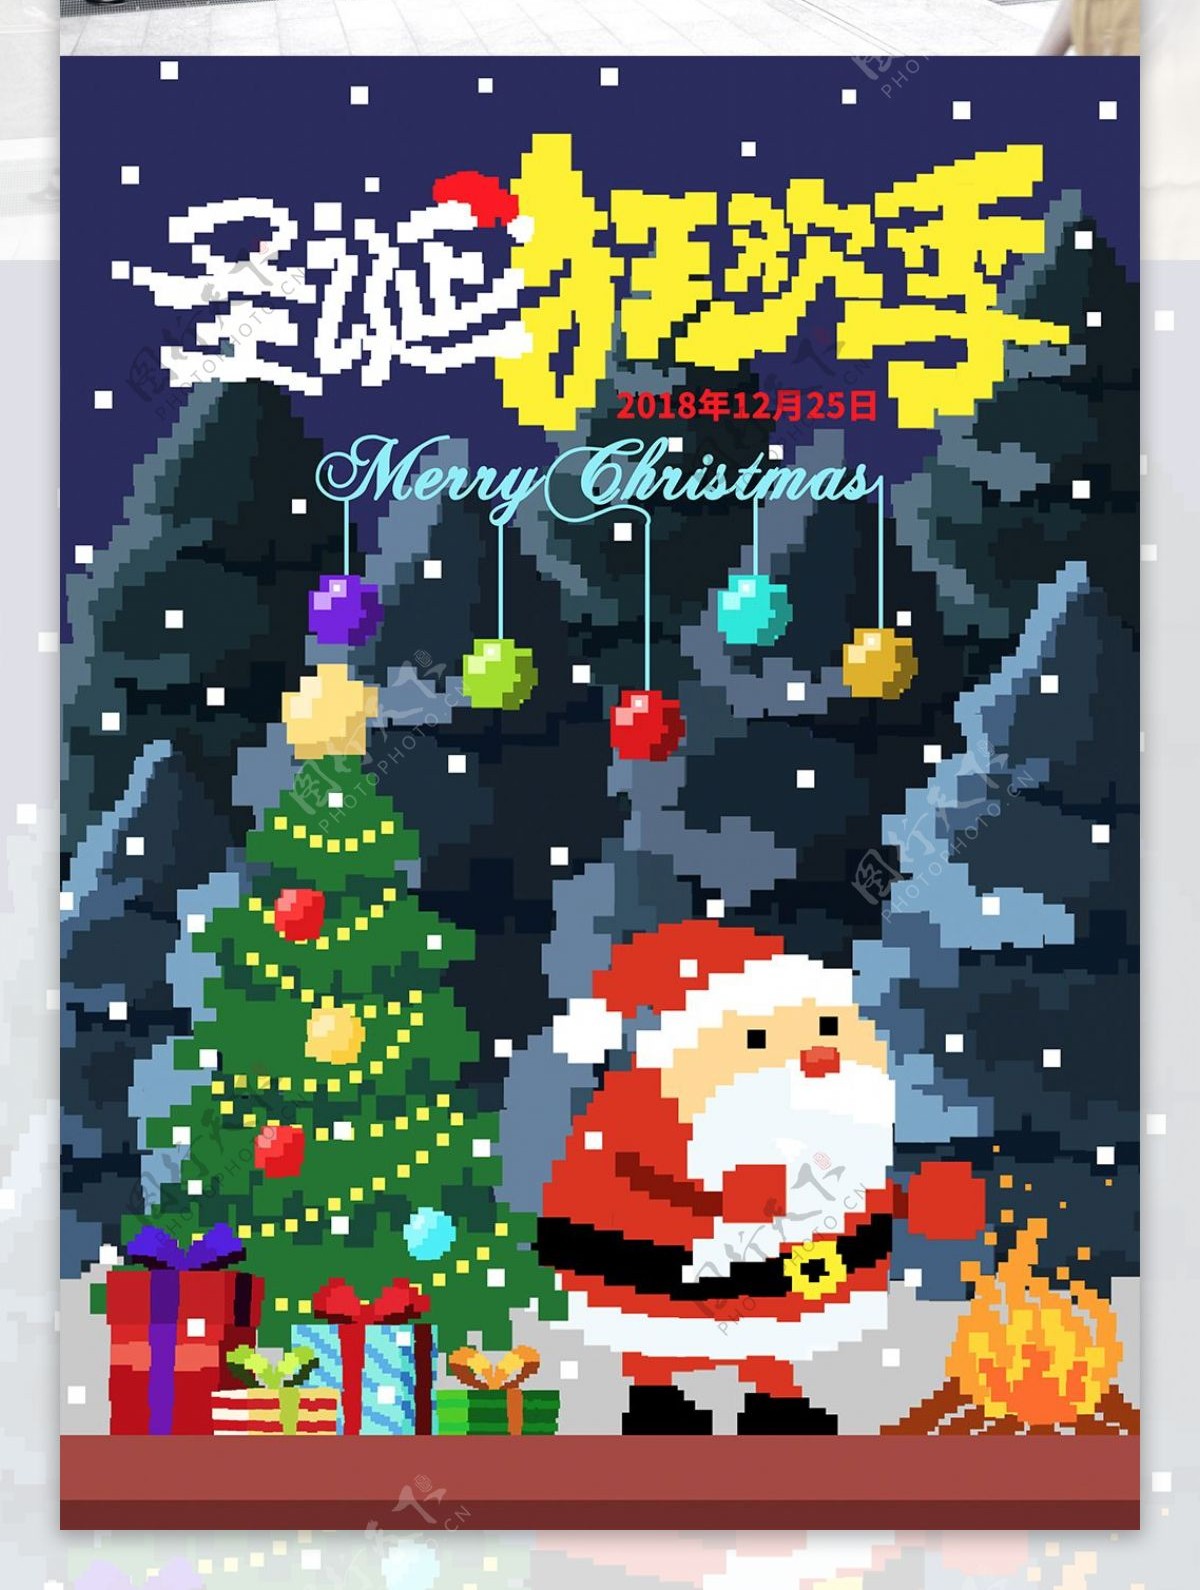 像素风格圣诞狂欢季宣传单海报